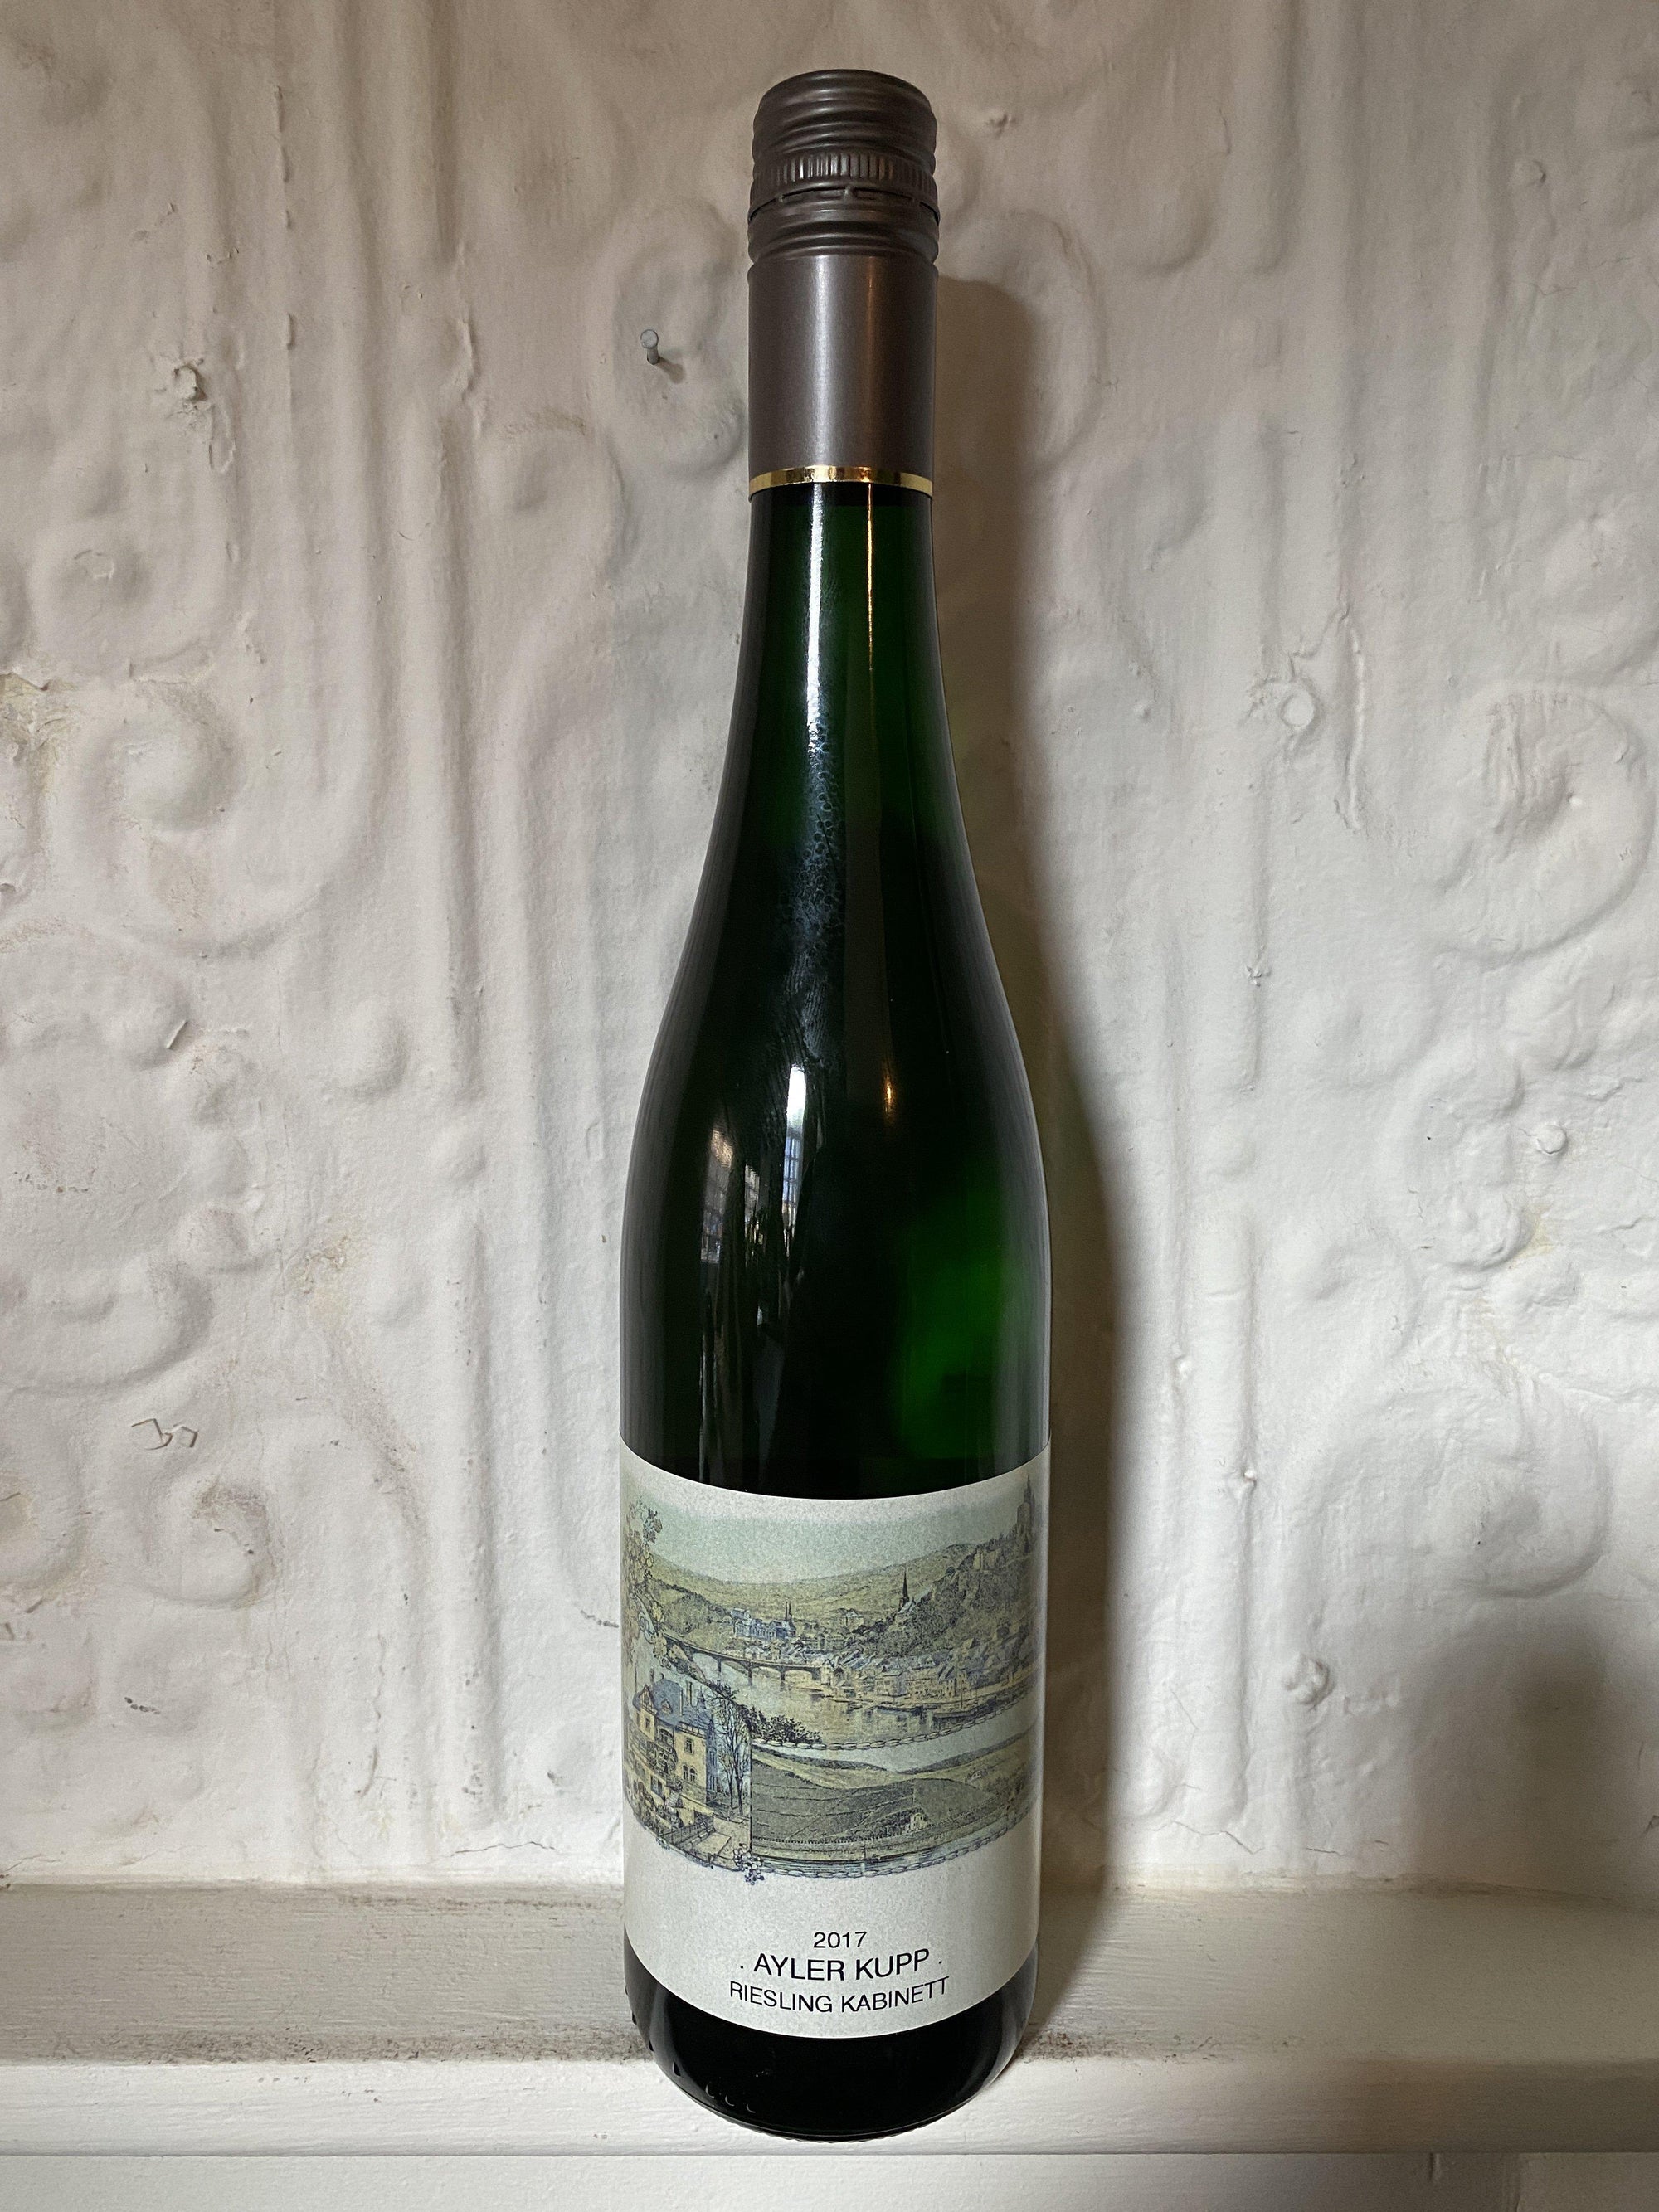 Vols, Riesling Ayler Kupp Kabinett, Helmut Plunien 2017 (Saar, Germany)-Wine-Bibber & Bell